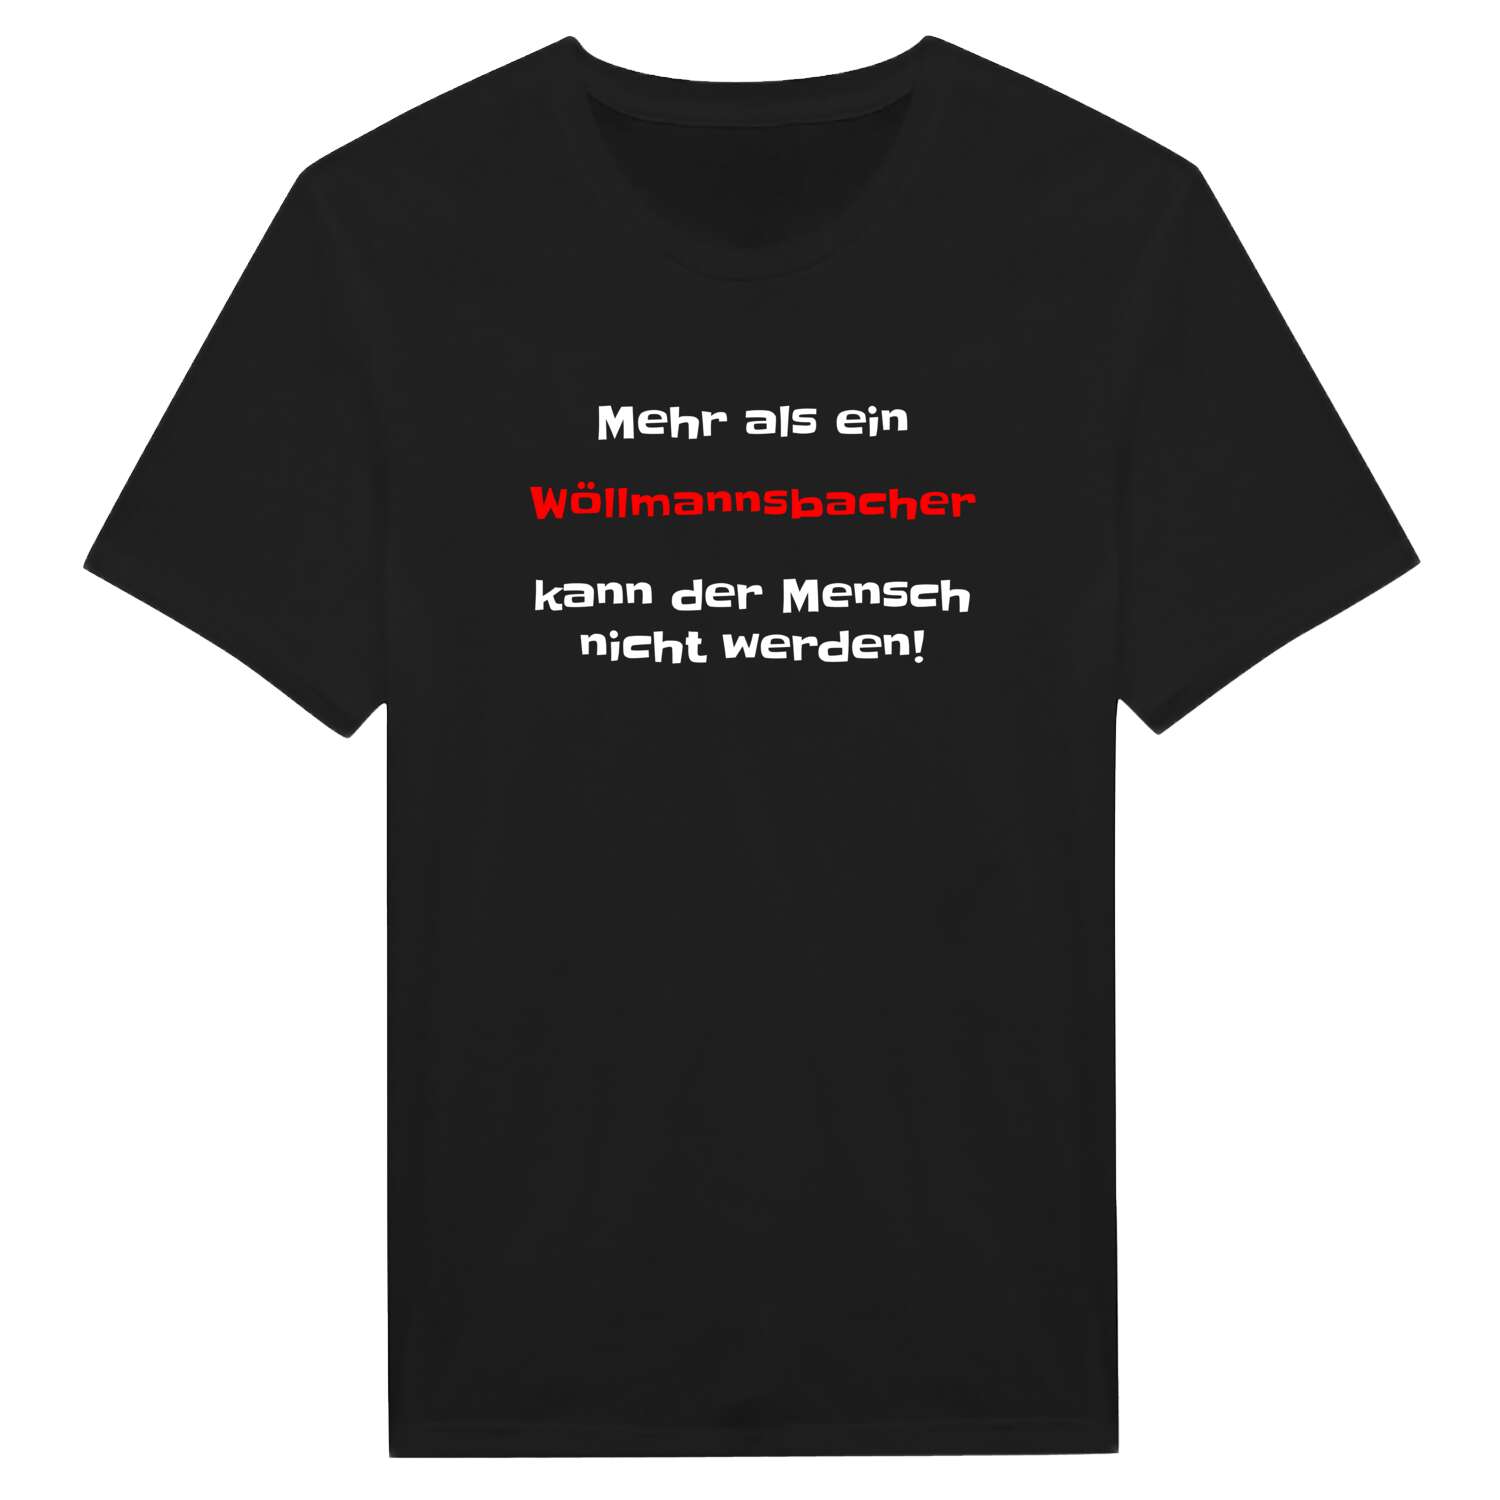 Wöllmannsbach T-Shirt »Mehr als ein«